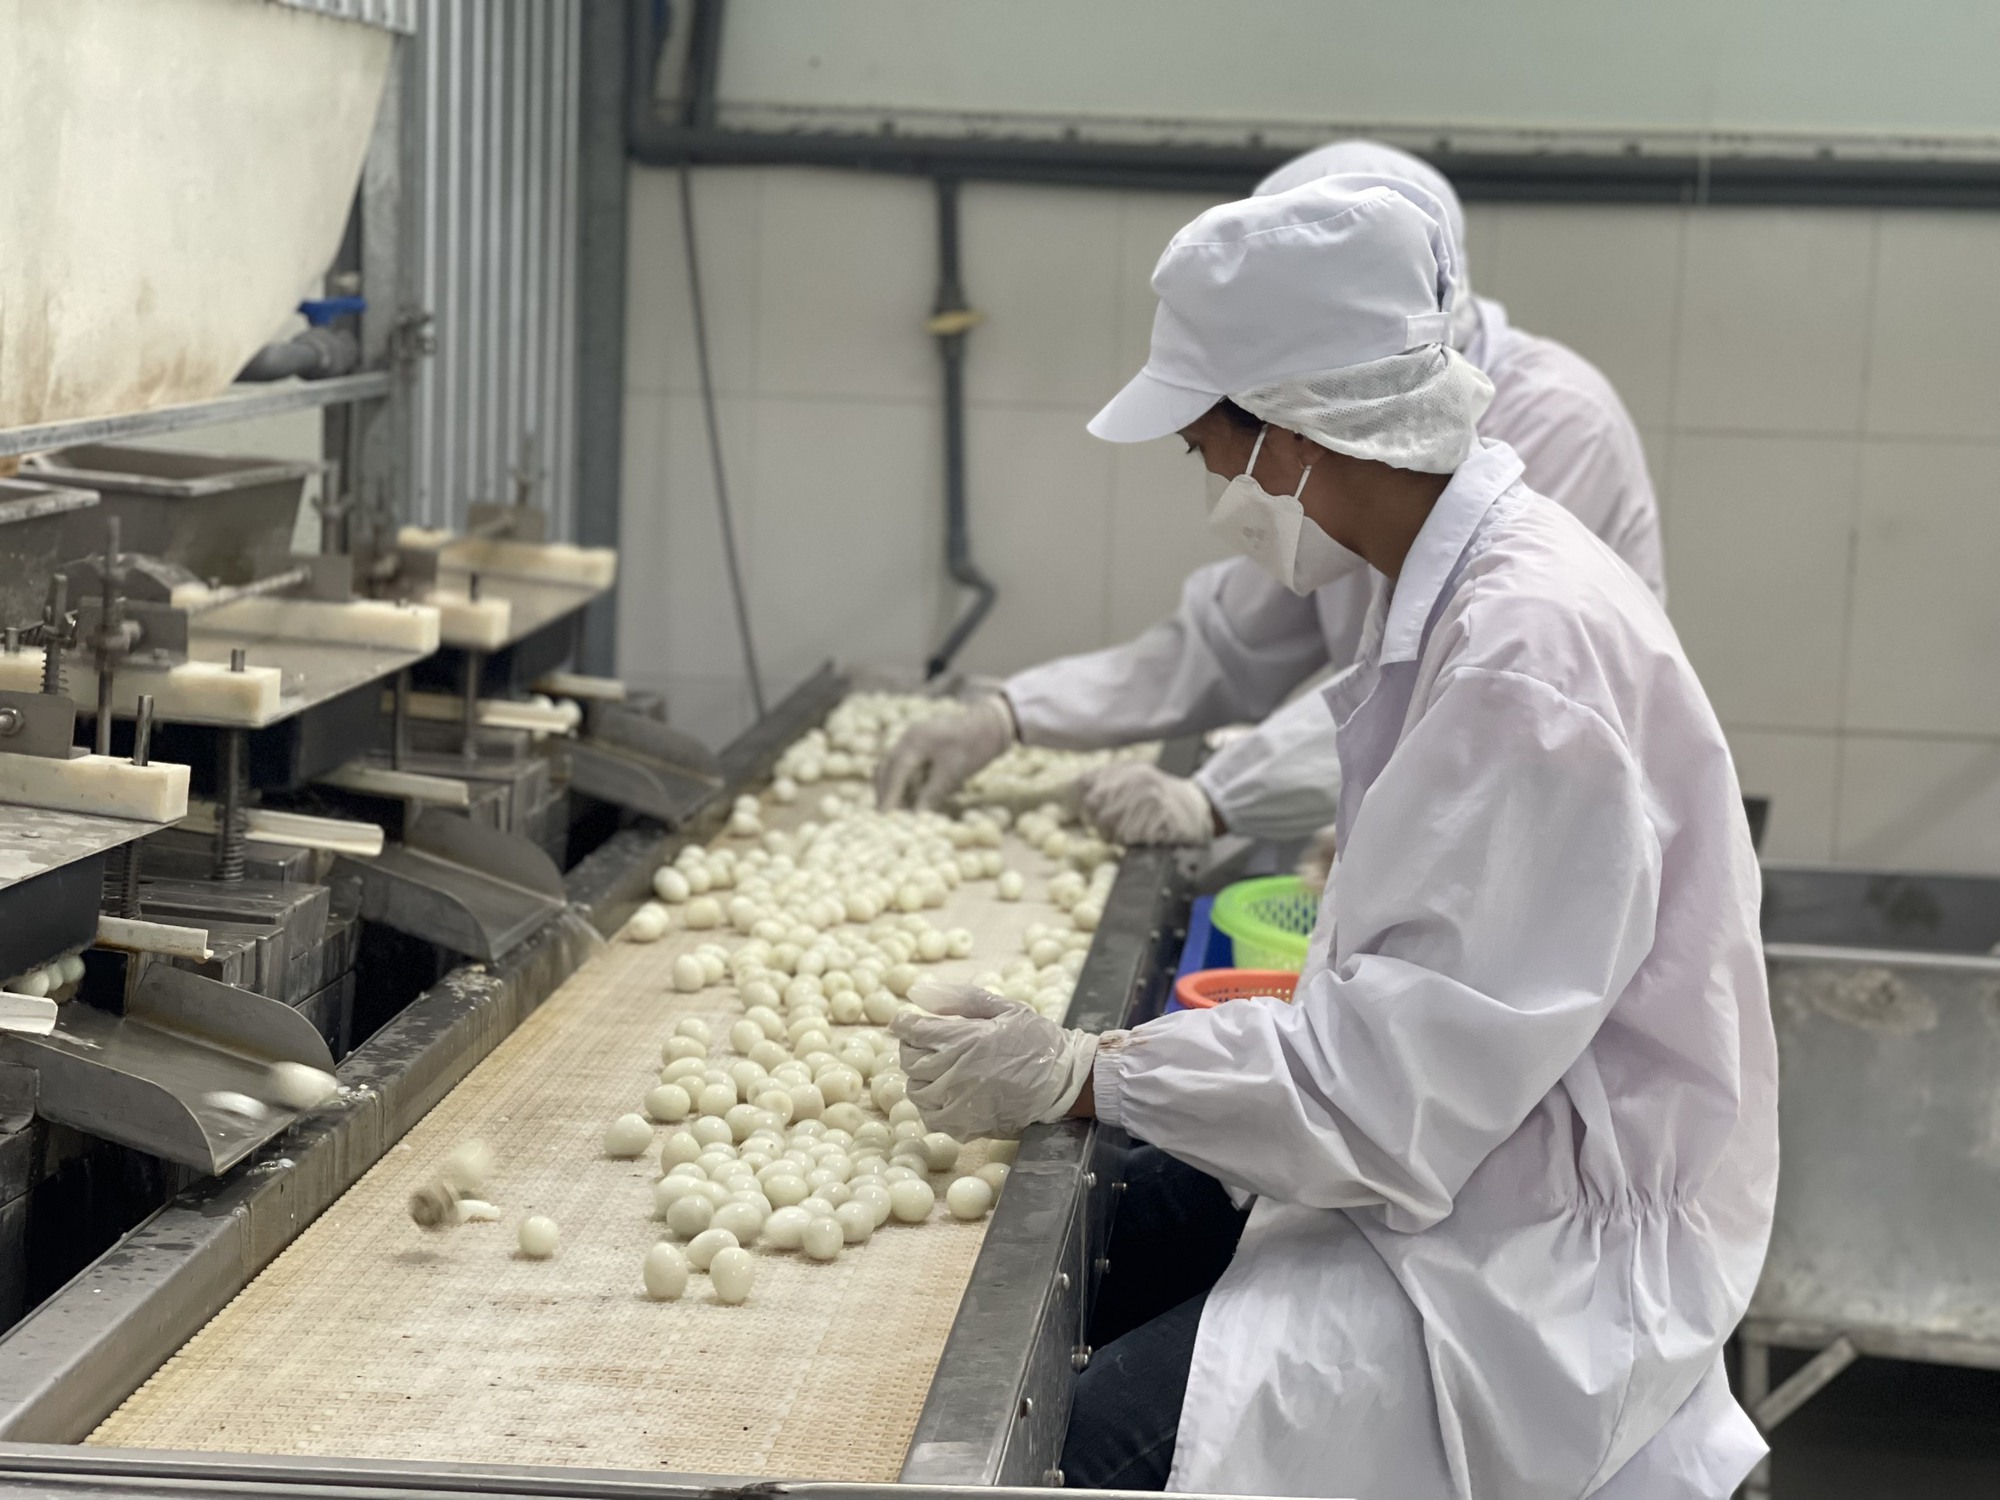 Đồng Nai: Xuất khẩu trứng cút tươi đạt OCOP 4 sao vào thị trường Nhật Bản - Ảnh 8.